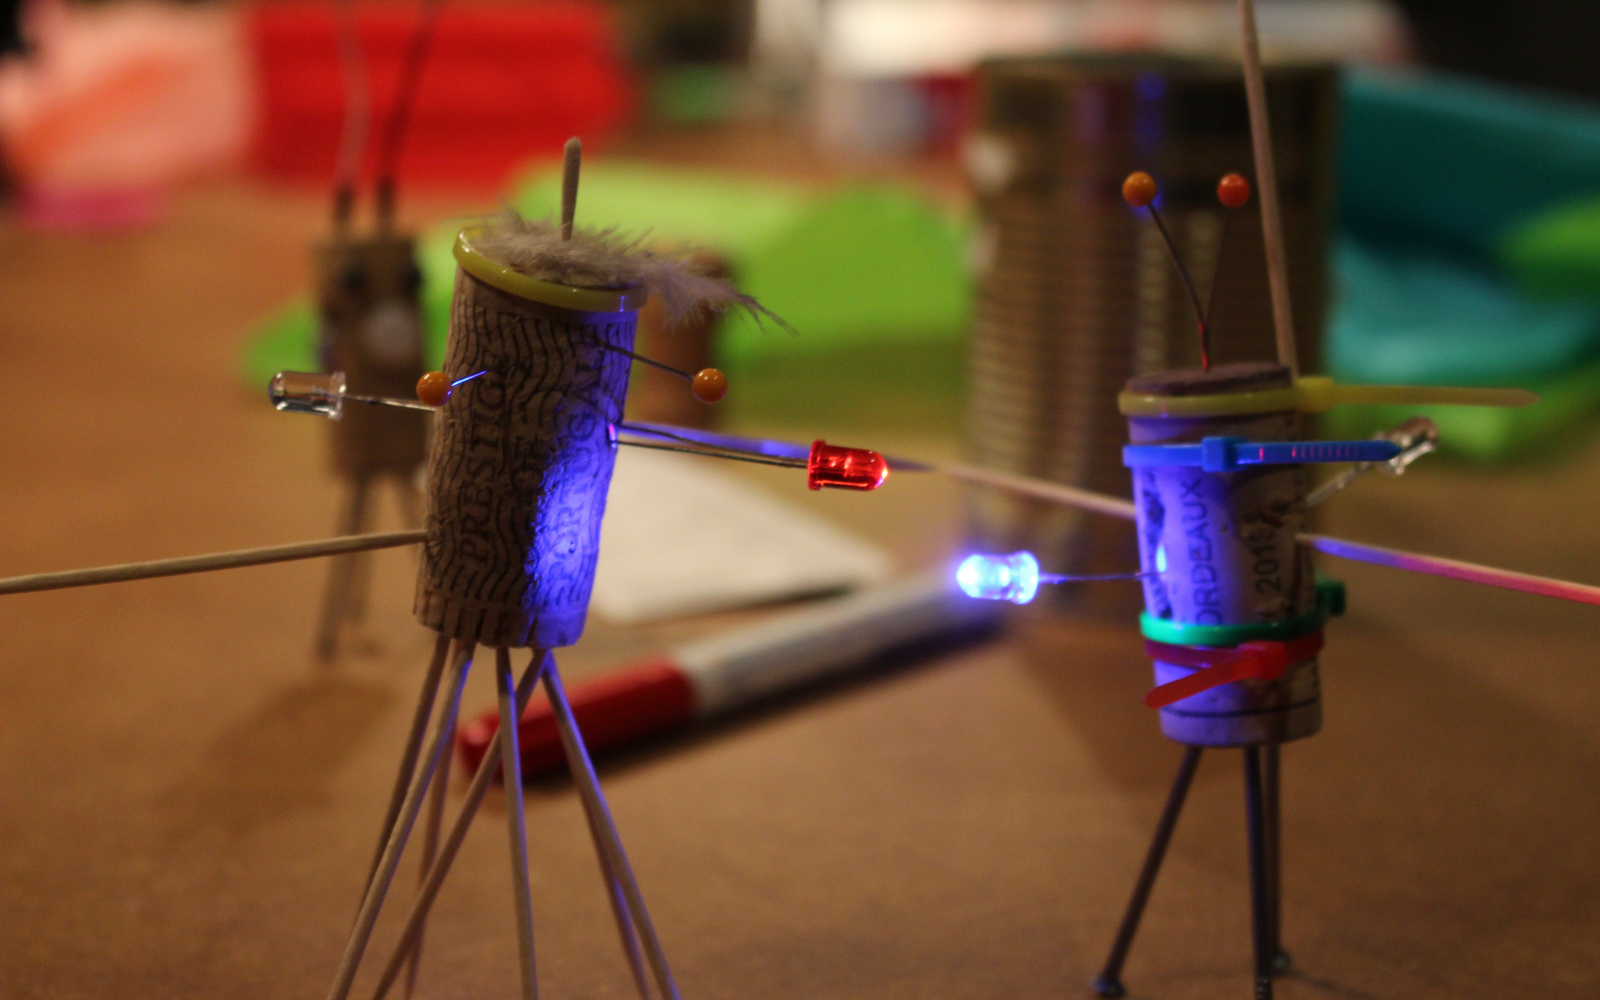 Zwei Korken, die zu kleinen Figuren umgewandelt wurden und mit LEDs ausgestattet sind stehen auf einem Tisch mit allerlei Bastelutensilien.